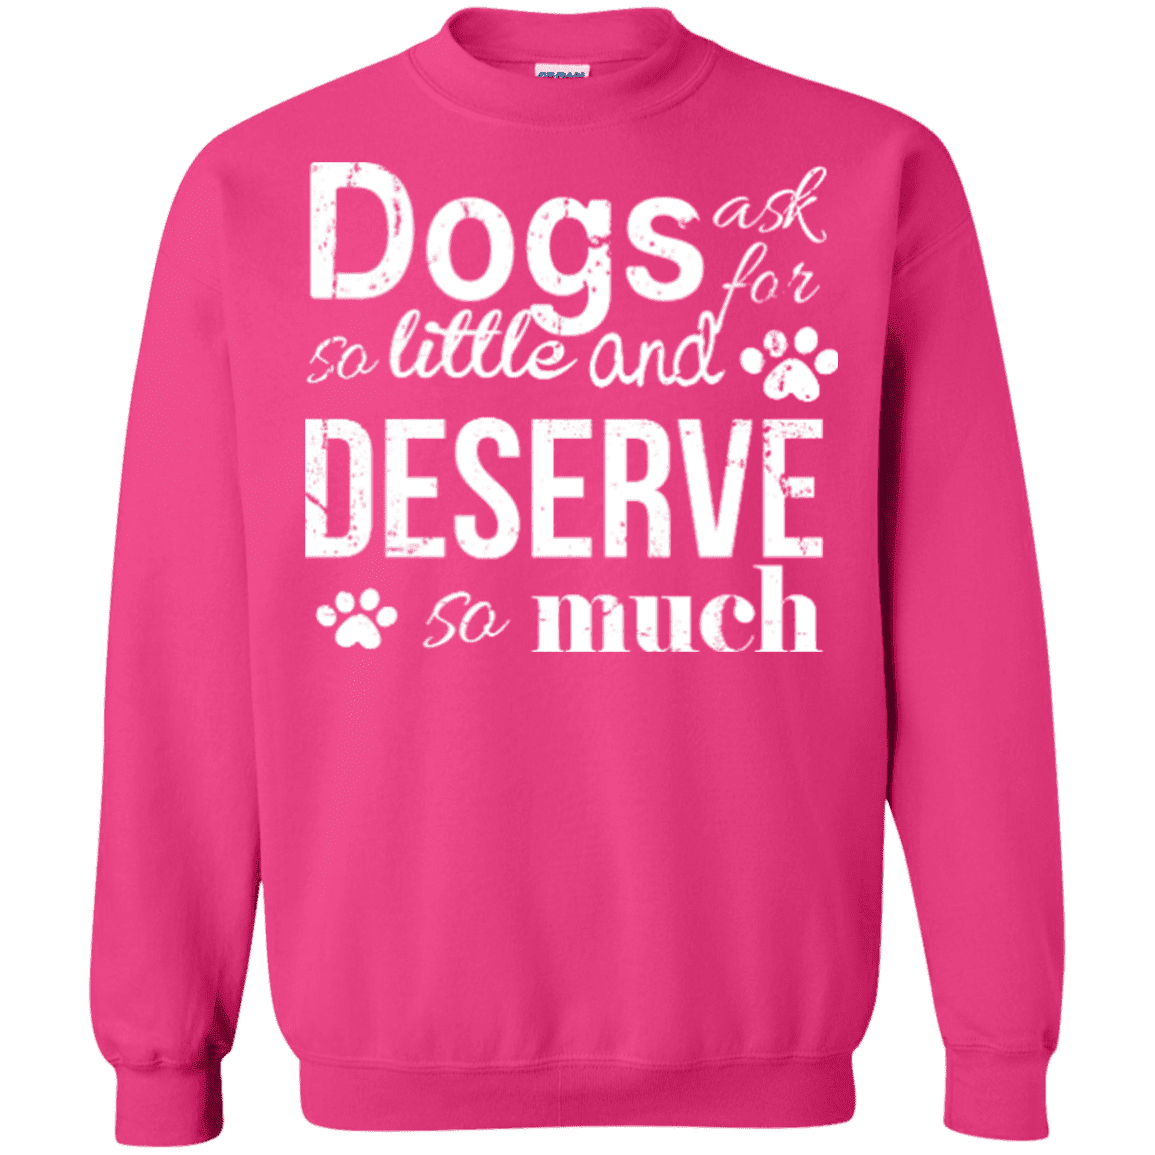 Dogs Deserve So Much - Sweatshirt.